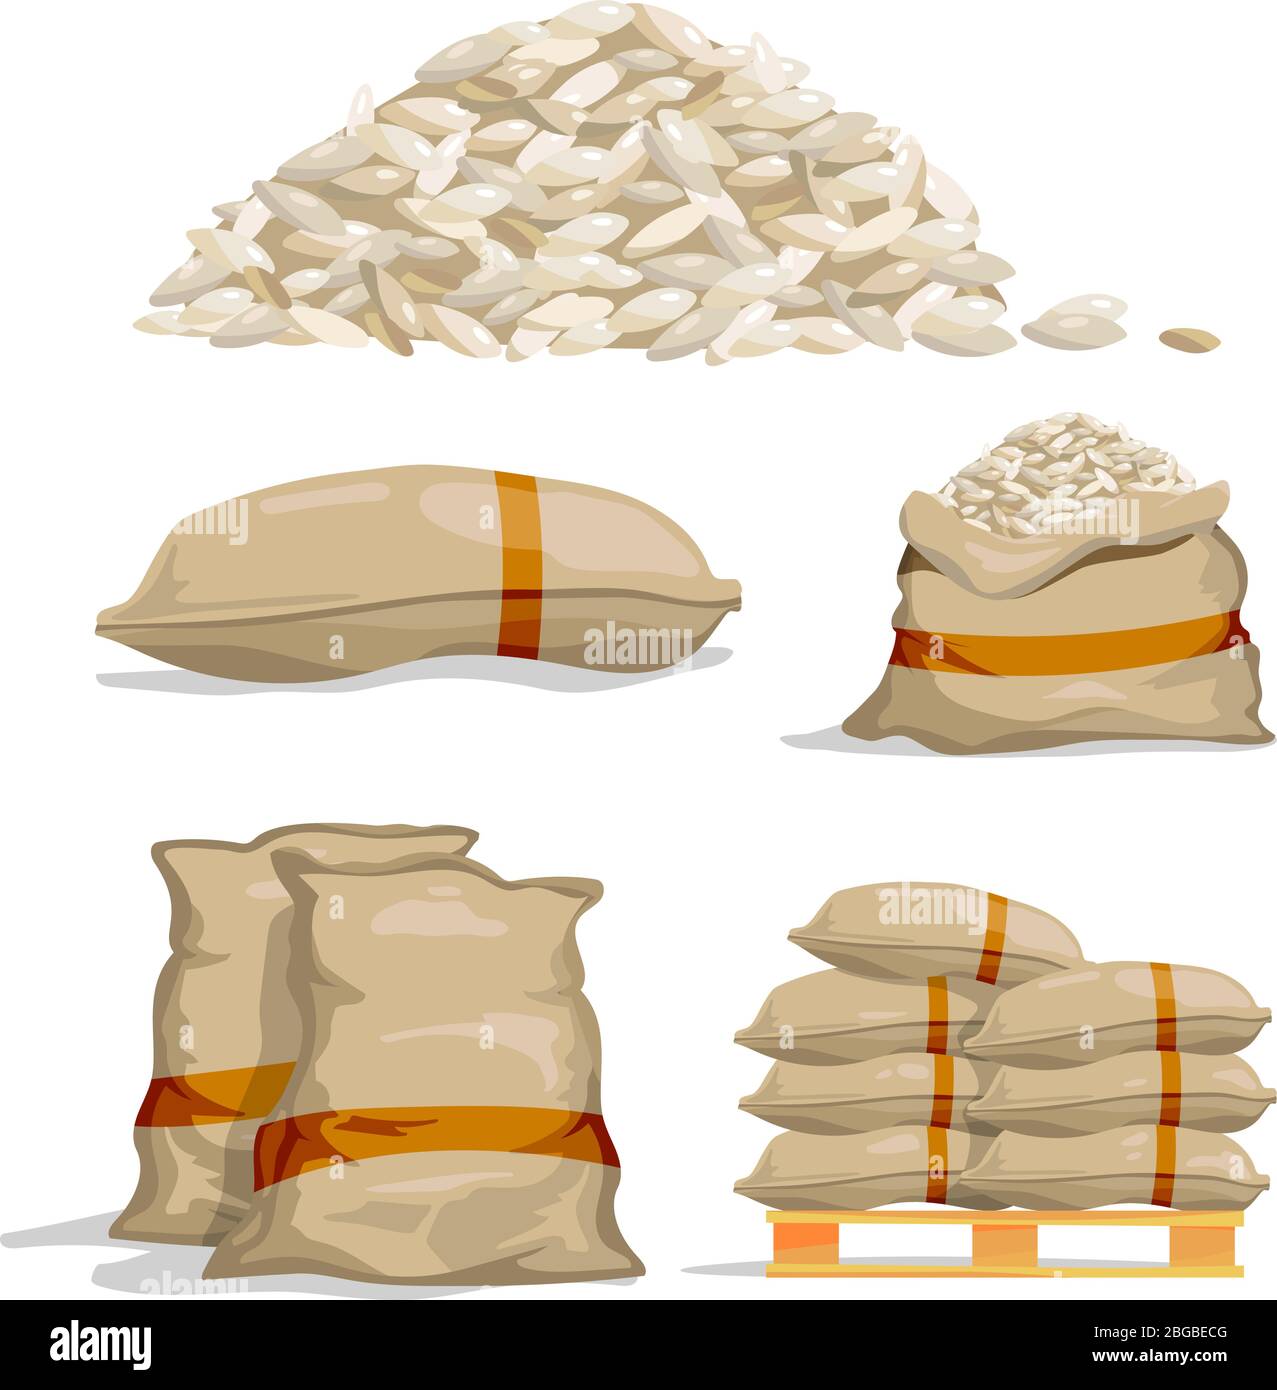 Verschiedene Säcke weißen Reis. Vektorgrafiken zur Aufbewahrung von Lebensmitteln Stock Vektor